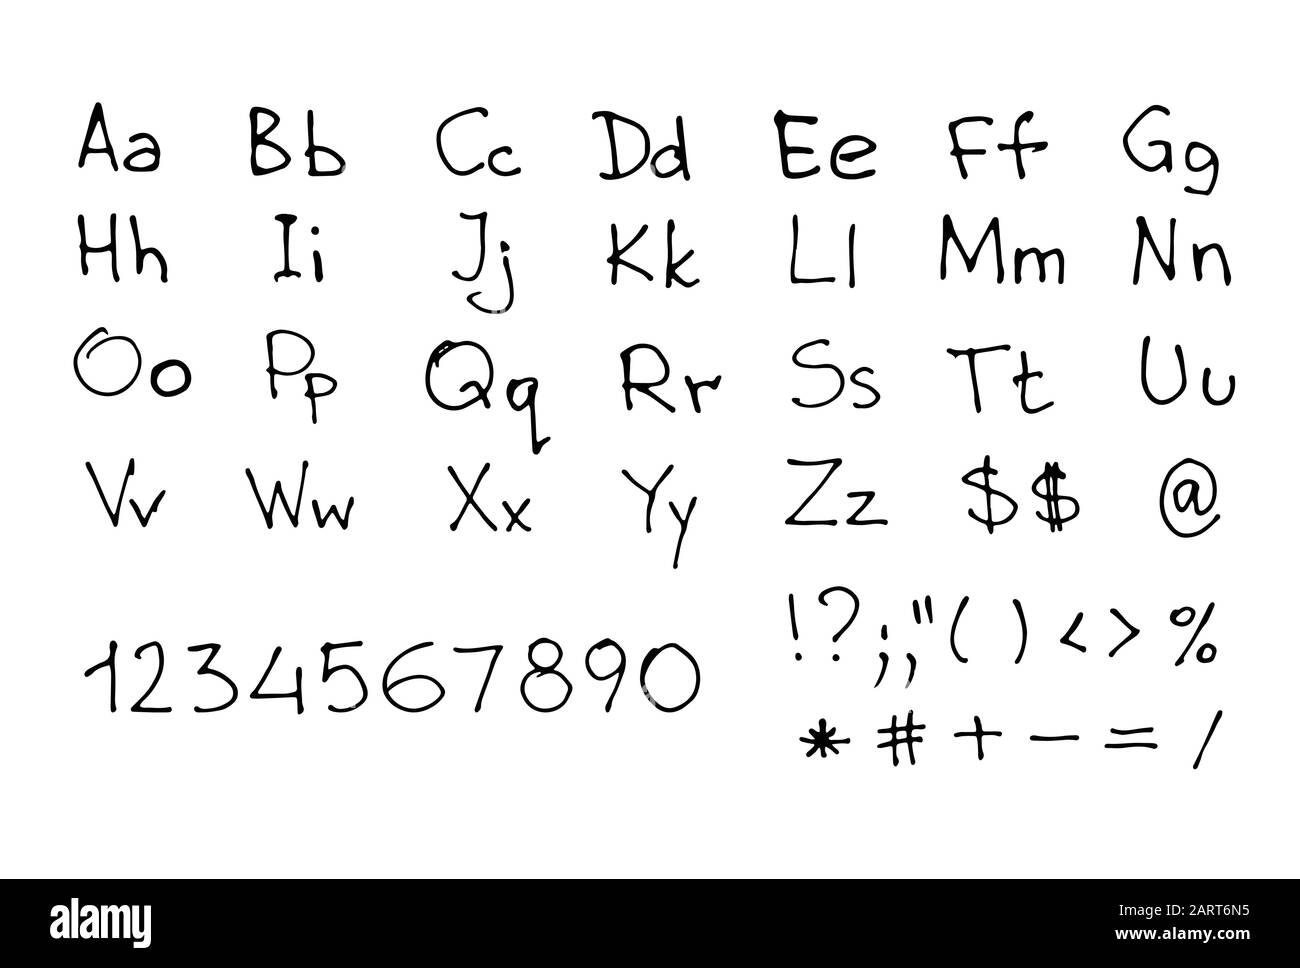 Fuente escrita a mano. Letras y números bosquejados en inglés aislados en blanco. Ilustración de vectores eps8. Ilustración del Vector